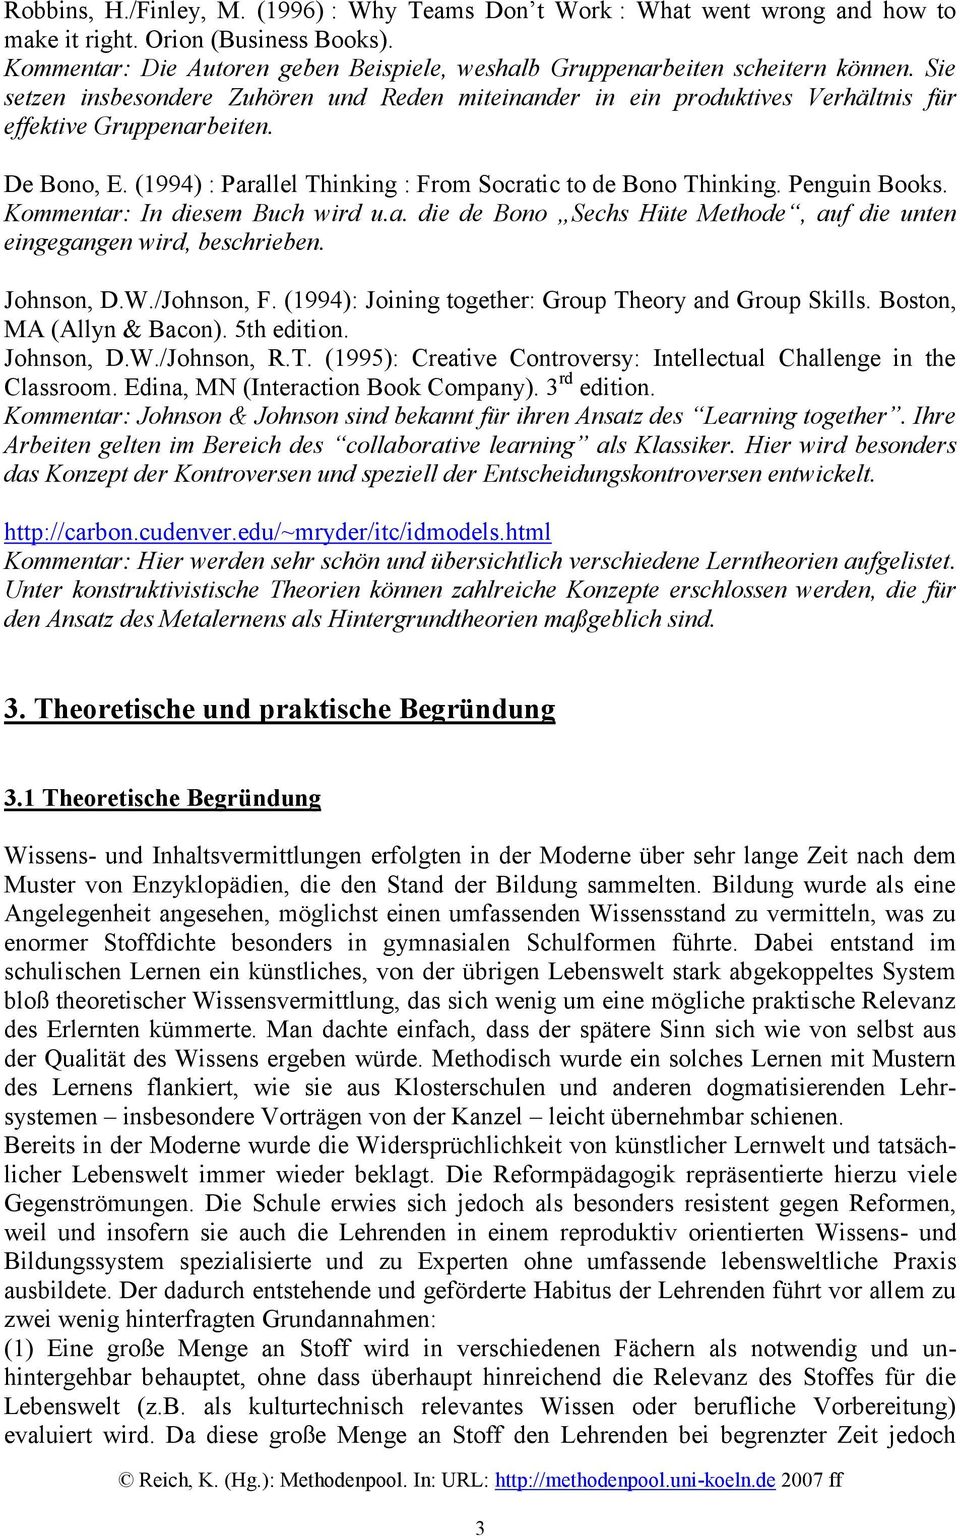 De Bono, E. (1994) : Parallel Thinking : From Socratic to de Bono Thinking. Penguin Books. Kommentar: In diesem Buch wird u.a. die de Bono Sechs Hüte Methode, auf die unten eingegangen wird, beschrieben.